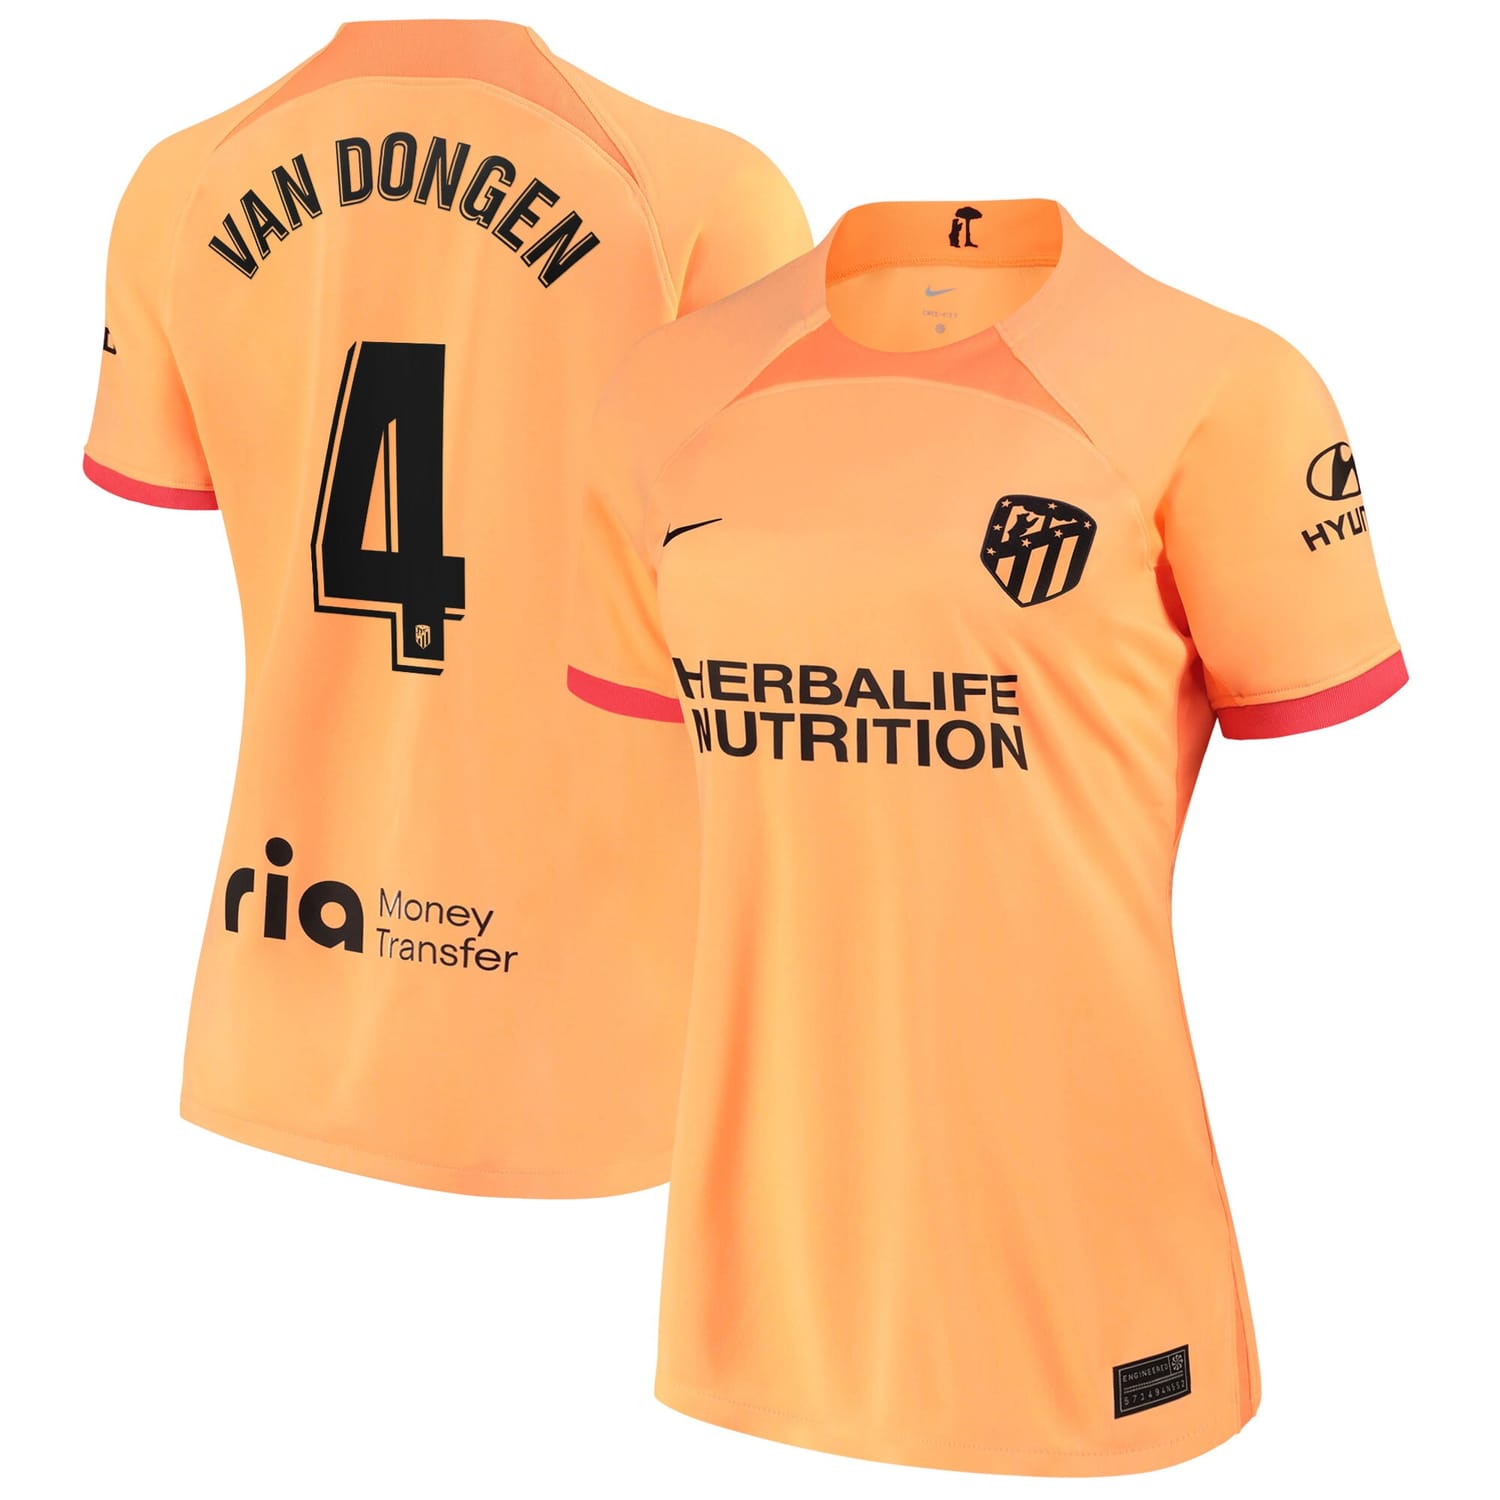 La Liga Atletico de Madrid Third Jersey Shirt 2022-23 player Merel van Dongen 4 printing for Women